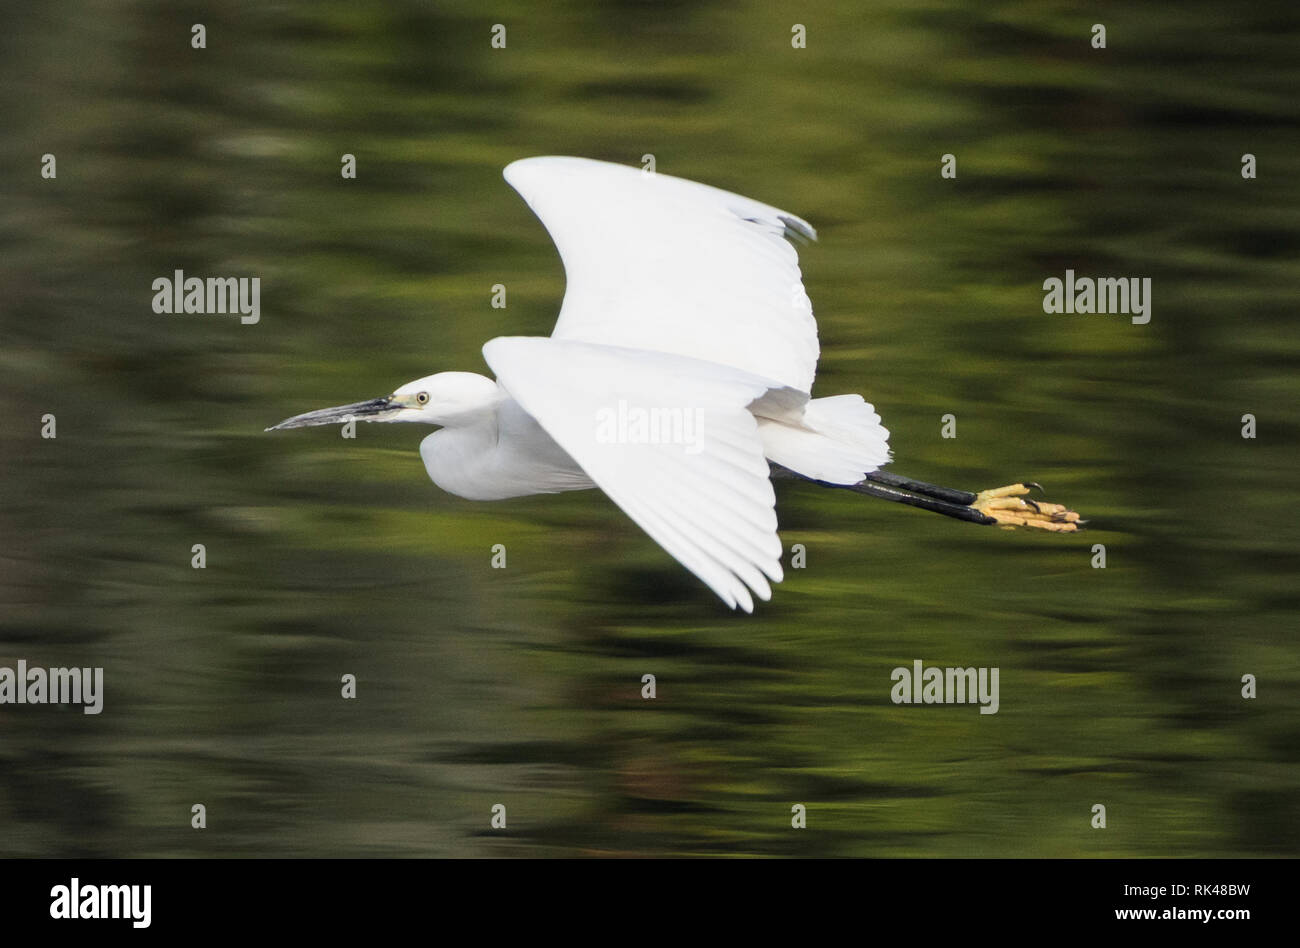 Little egret egretta garzetta wild bird in flight over water with river rural background landscape Stock Photo